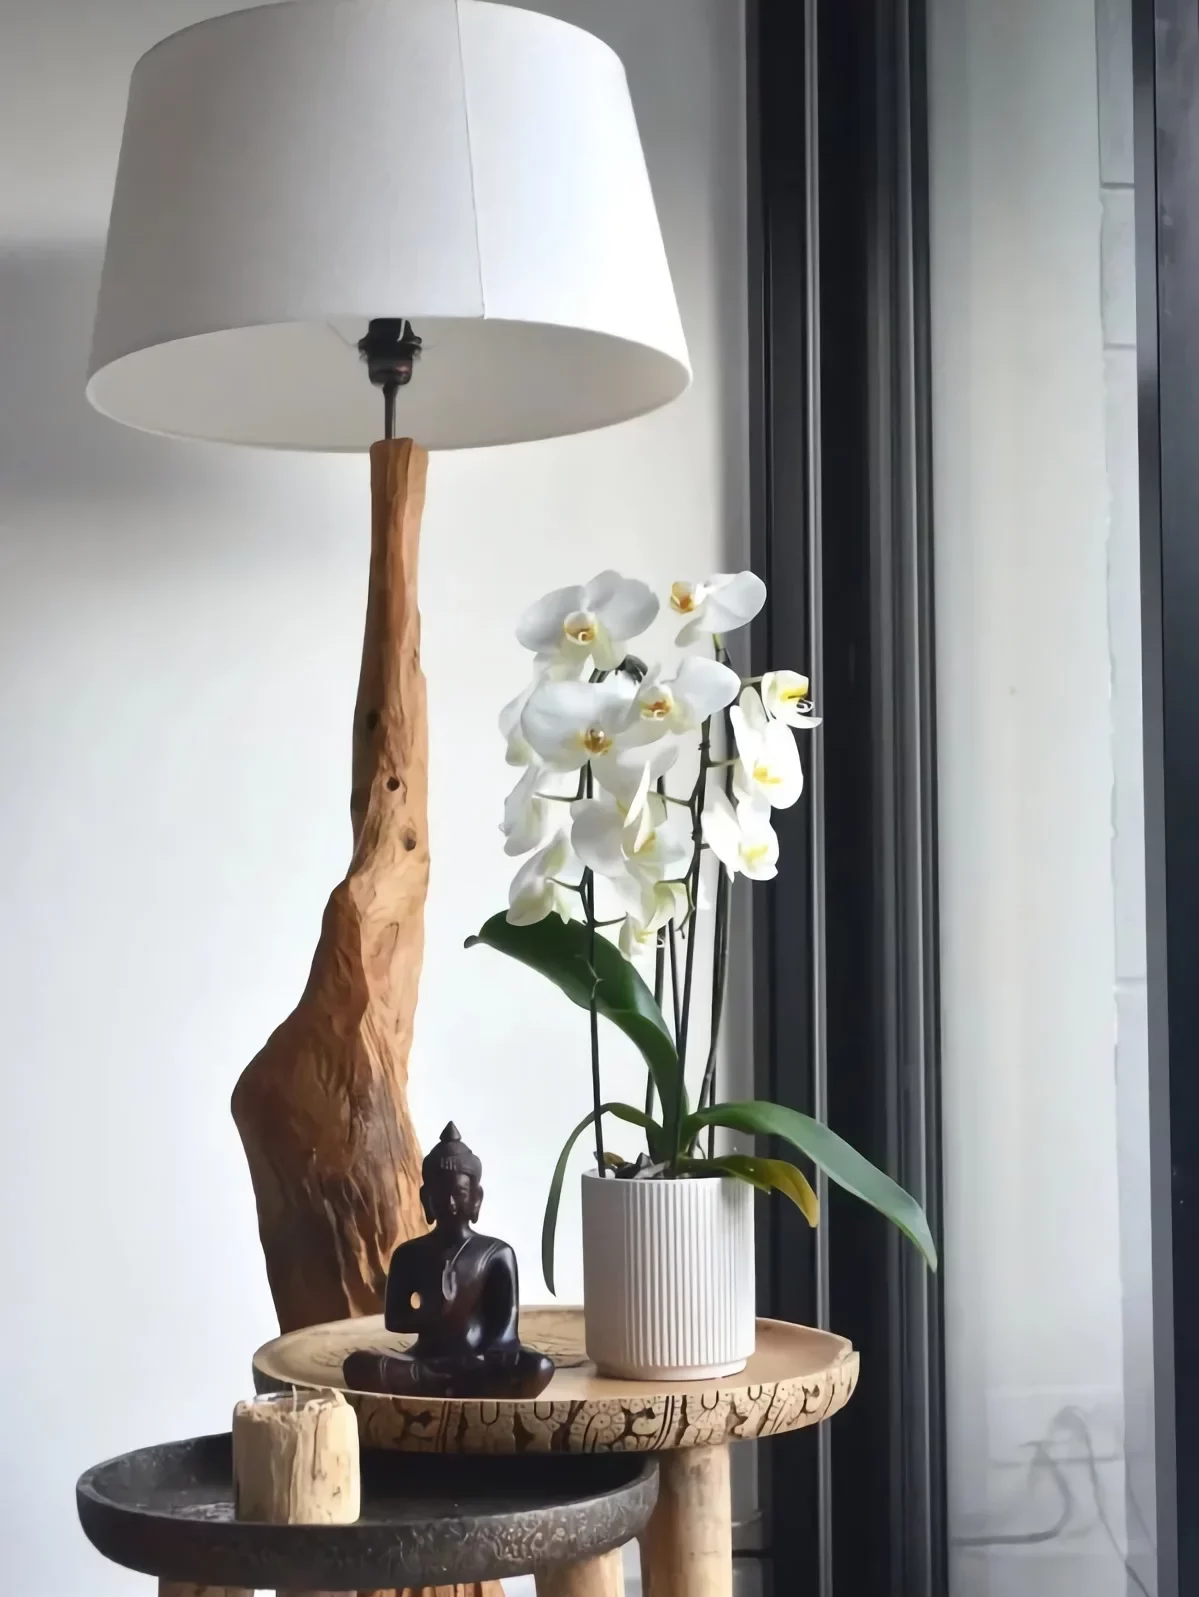 plante interieur fleuri populaire lespèce orchidée blanche